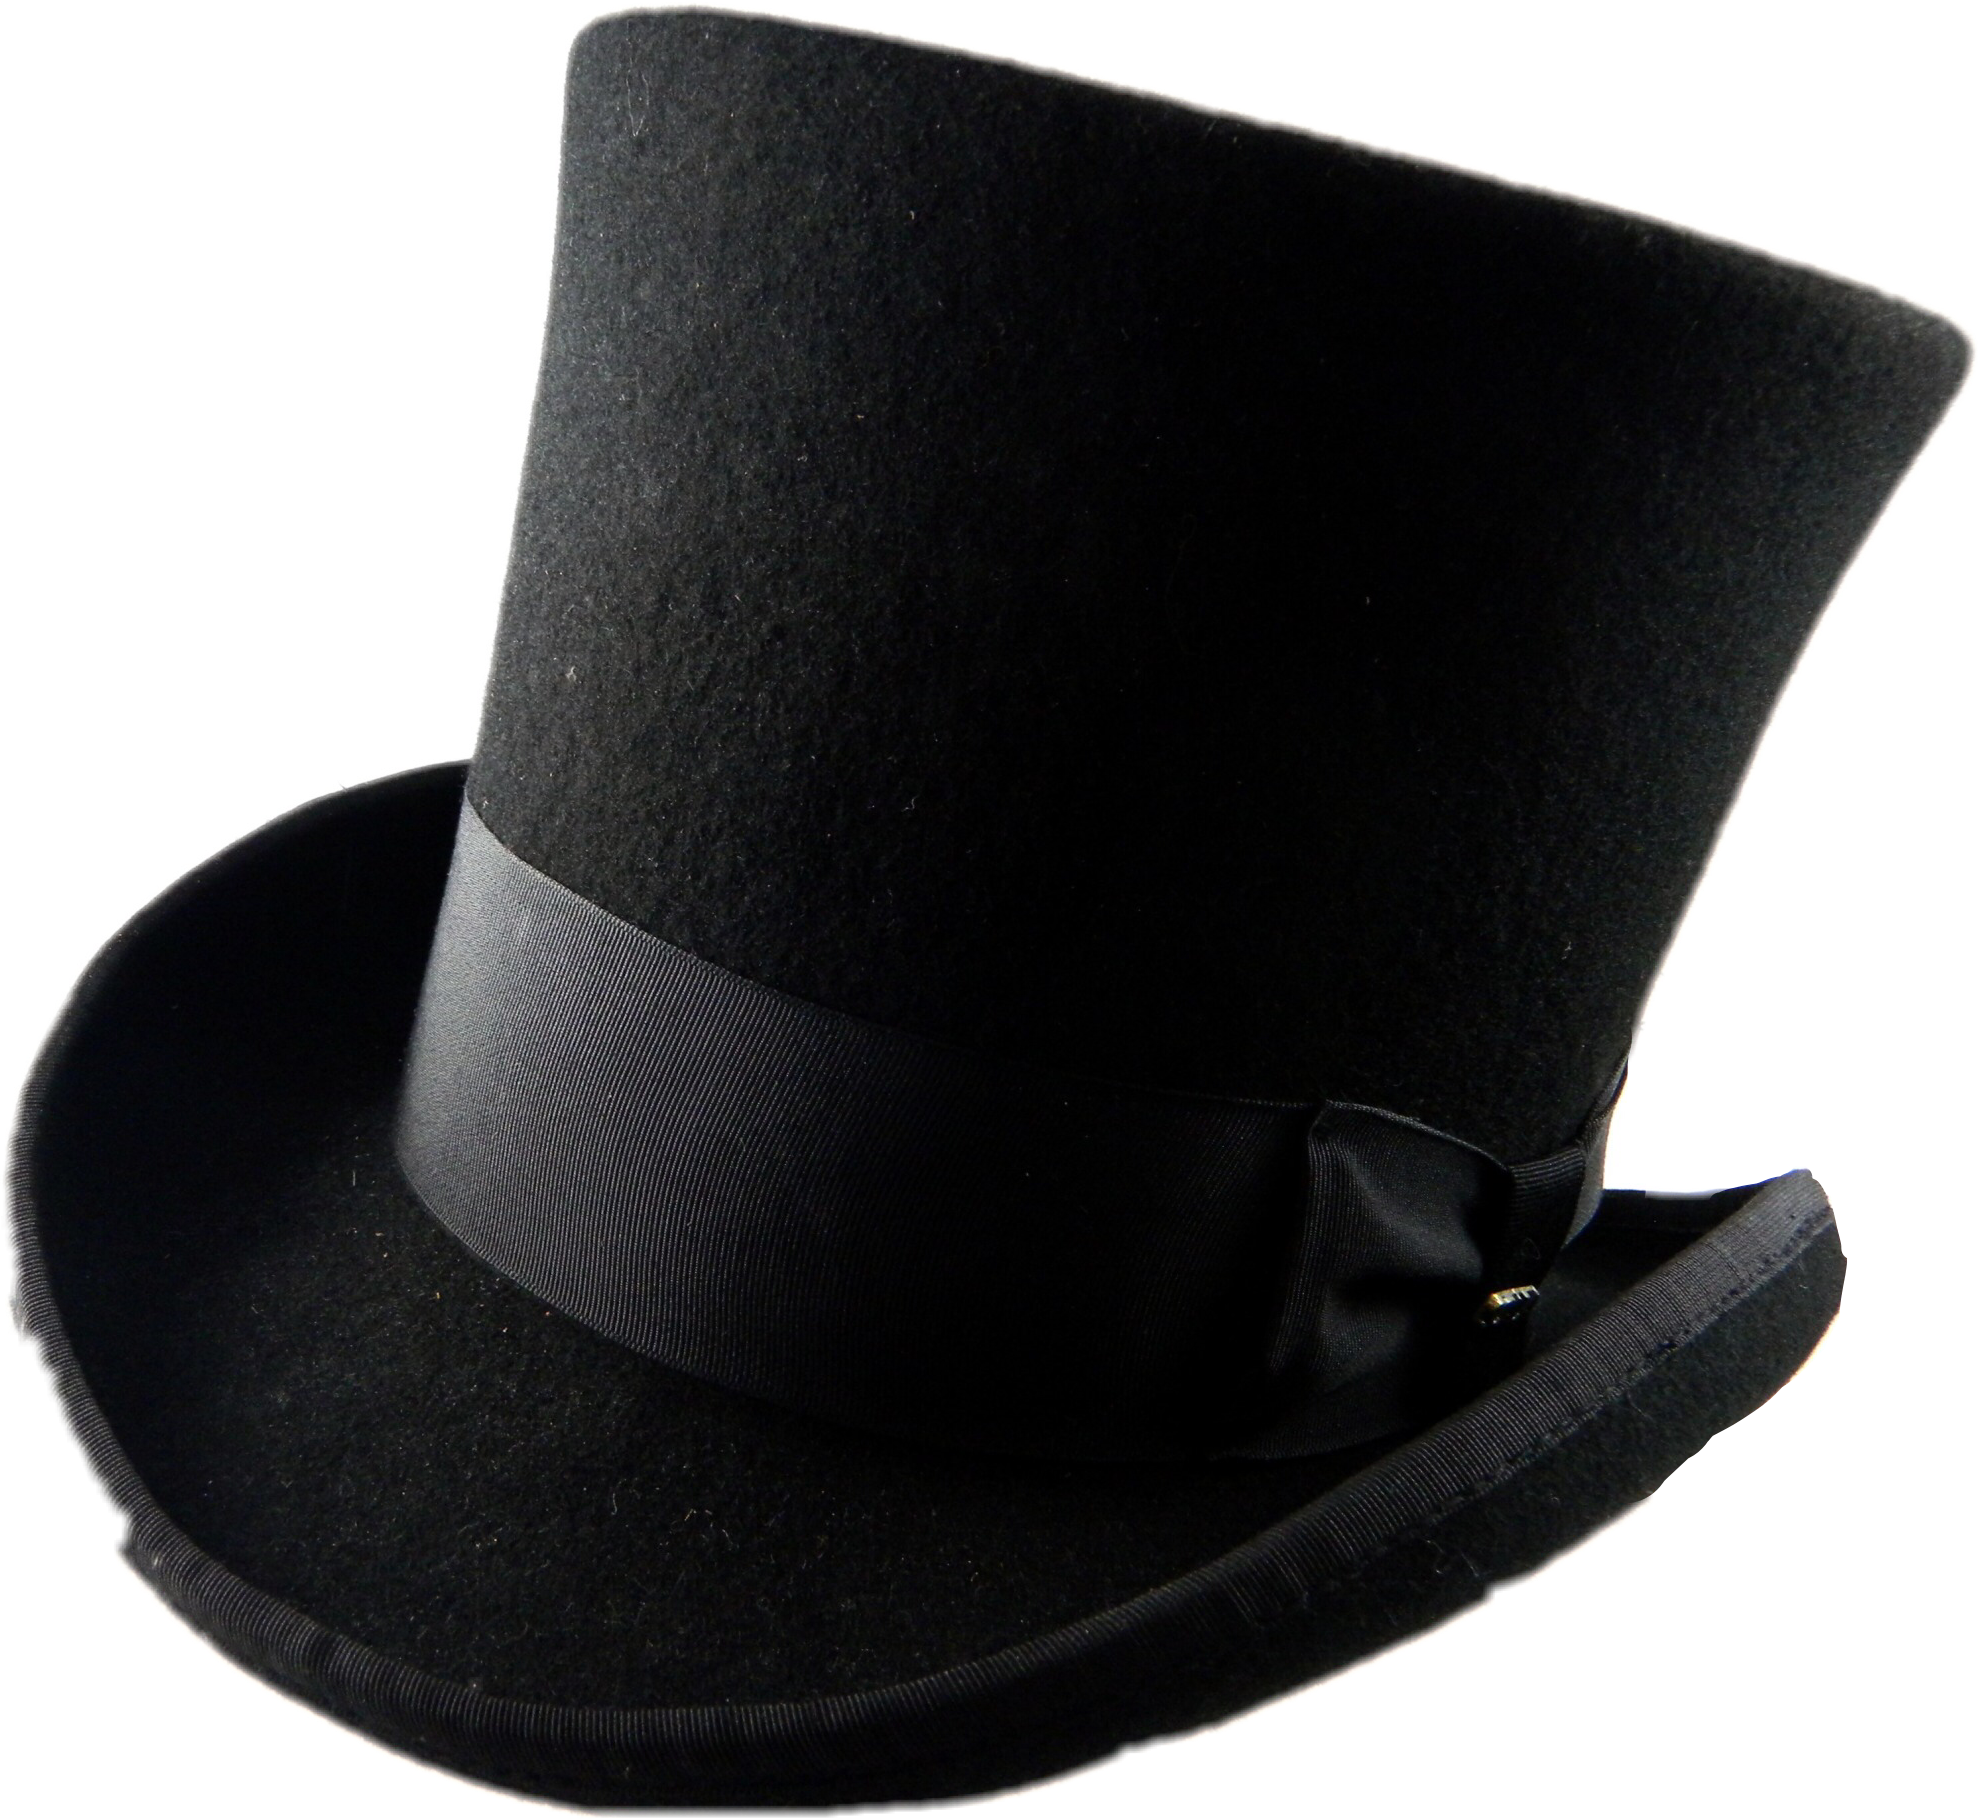 Шляпа поэта. Боливар шляпа 19 век. Боливар это широкополая шляпа. Боливар шляпа Пушкин. Шляпы широкополые мужские 19 век.